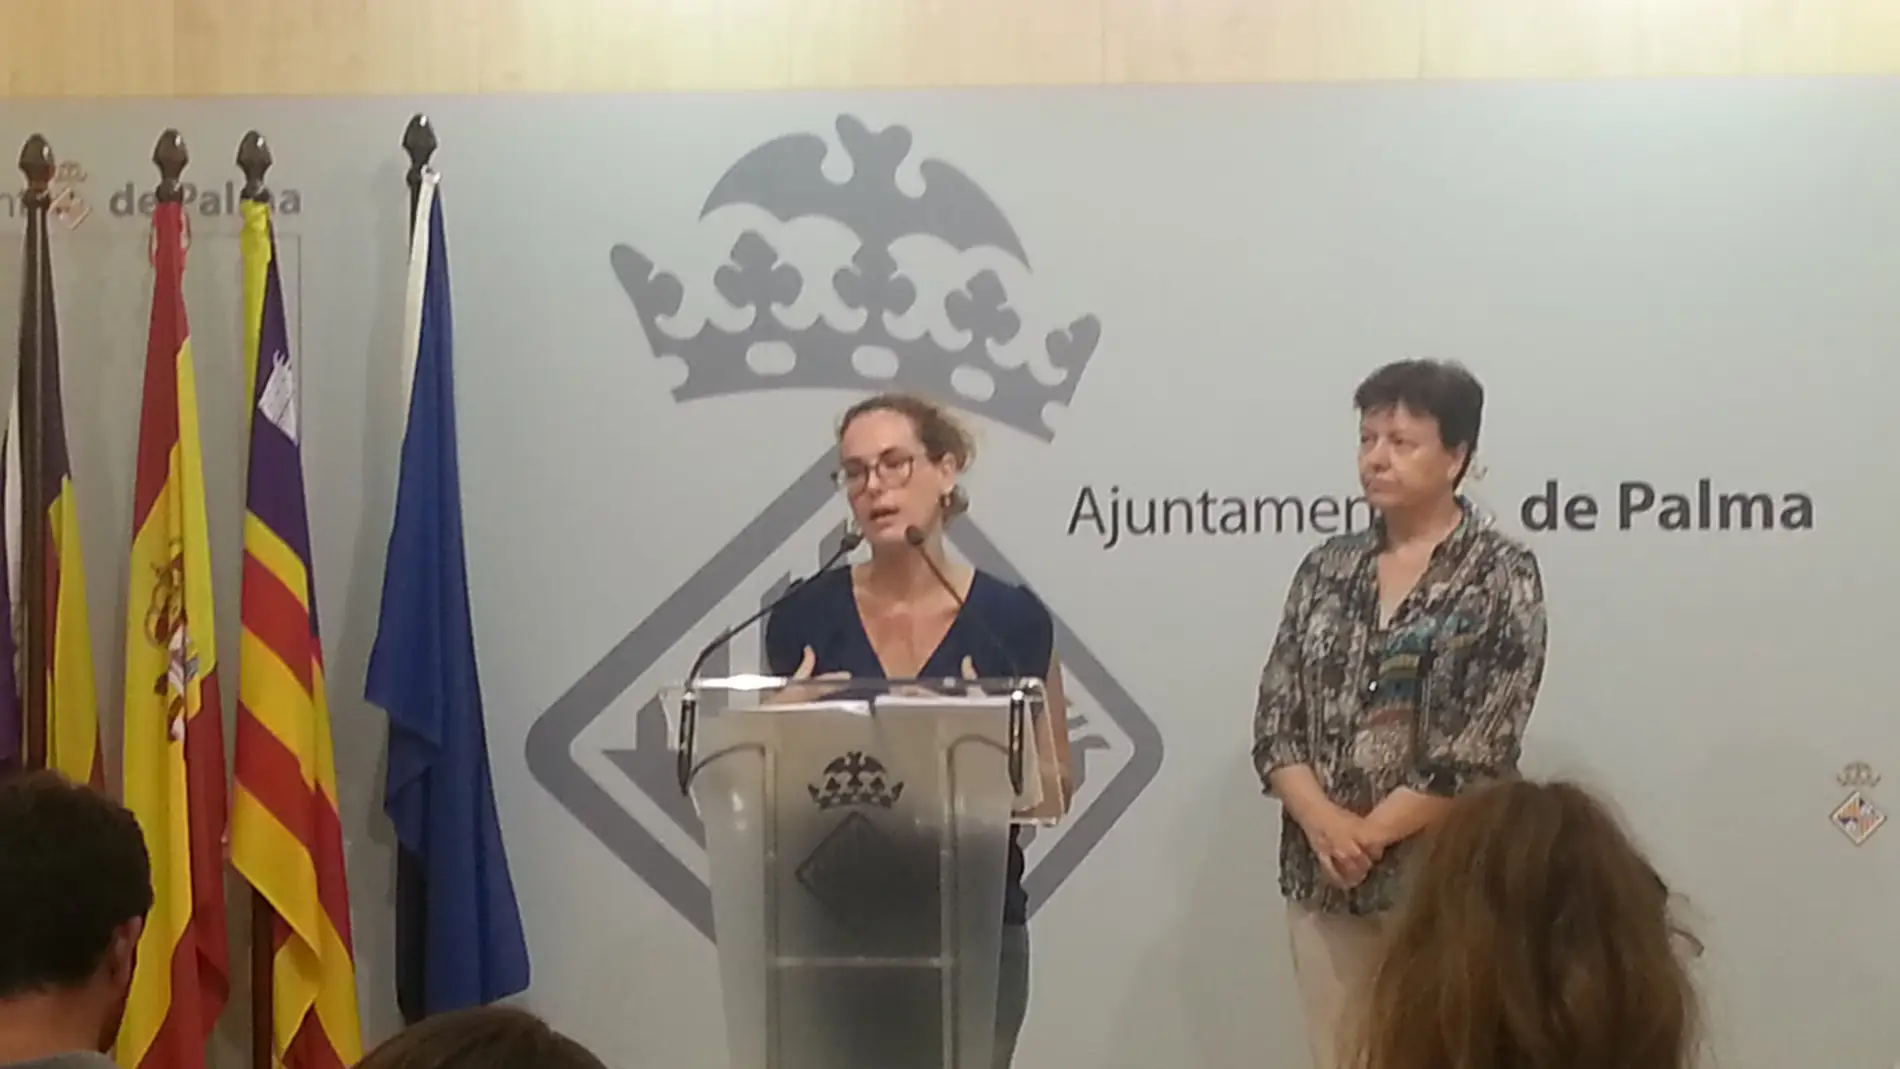 Eva Frade y Susana Moll en la Junta de Gobierno de Palma